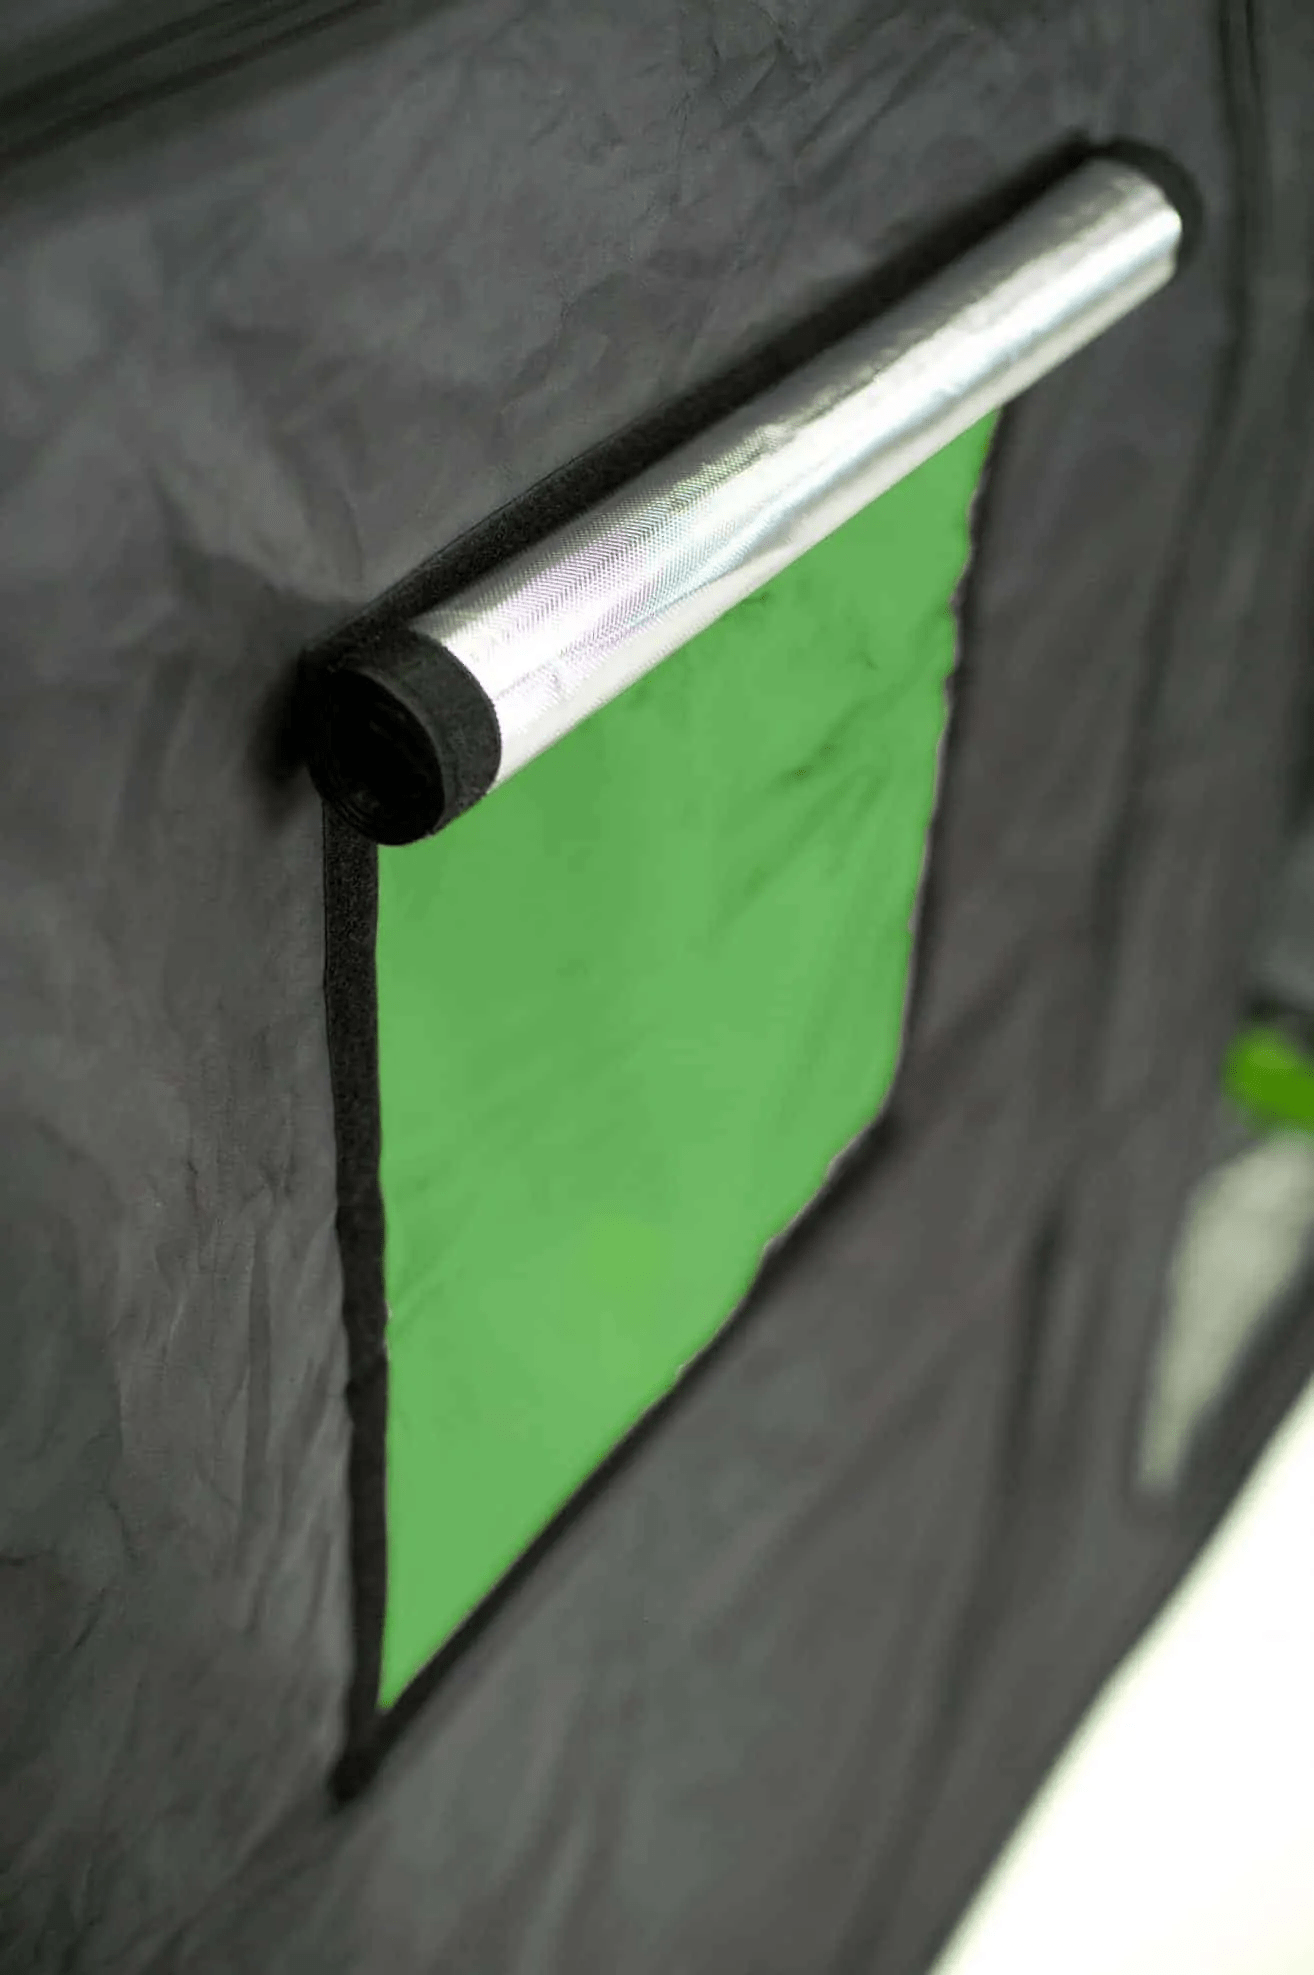 Grow Tents Green-Qube V: GQ240 – 240 x 240 x 200cm